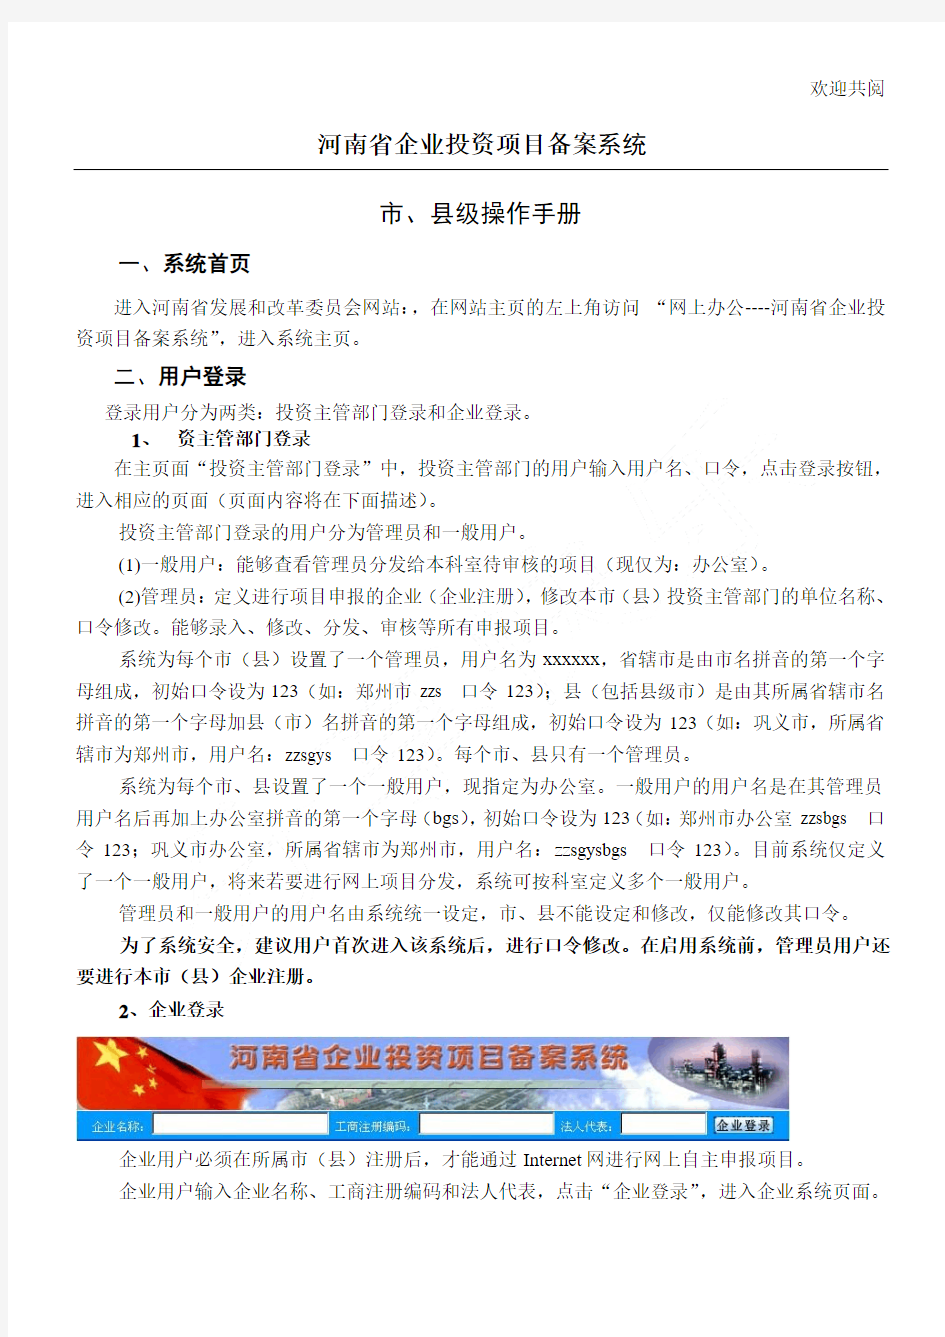 河南省固定资产投资项目登记备案系统